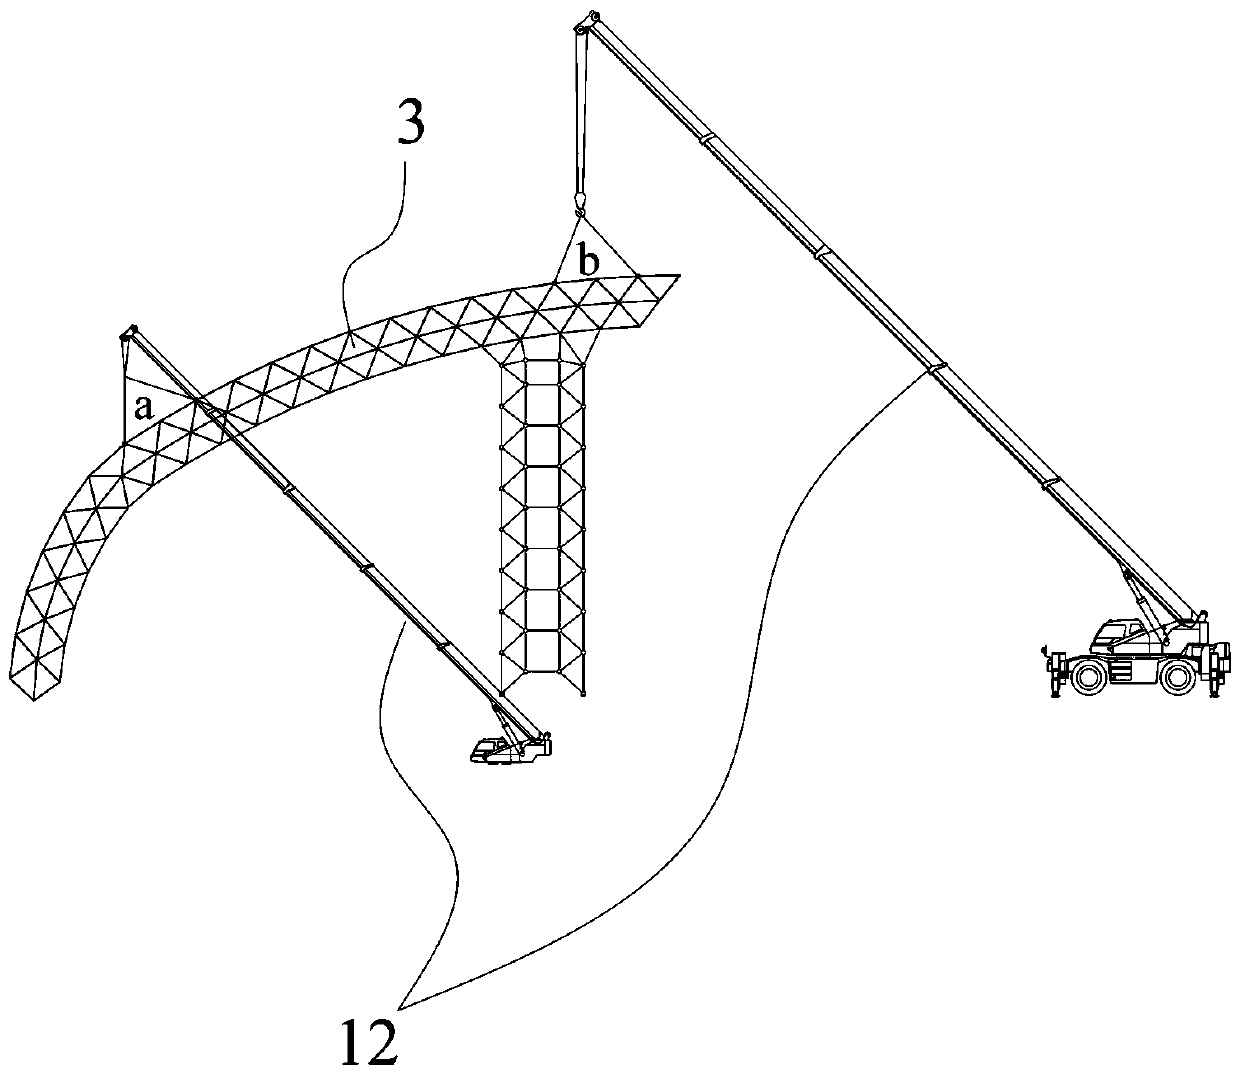 Installation method of long-span welded ball net rack